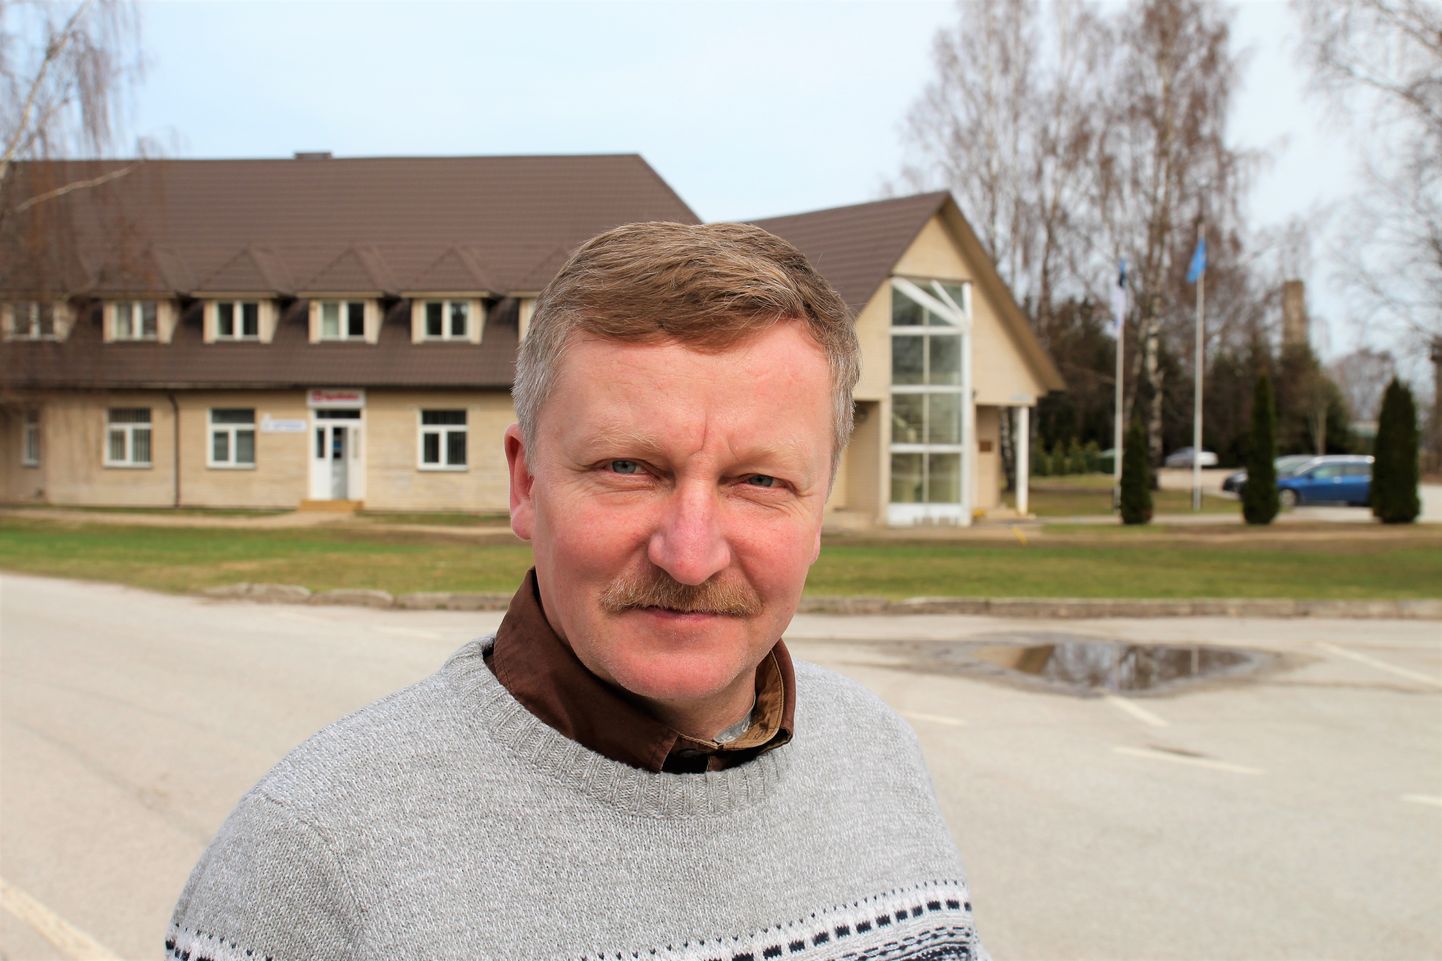 «Plaanime sellel aastal saada igas maakonnas − Põlva, Võru, Valga ja Tartu maakonnas – valmis ühe pilootprojekti,» lausus Kanepi vallavanem Andrus Seeme.